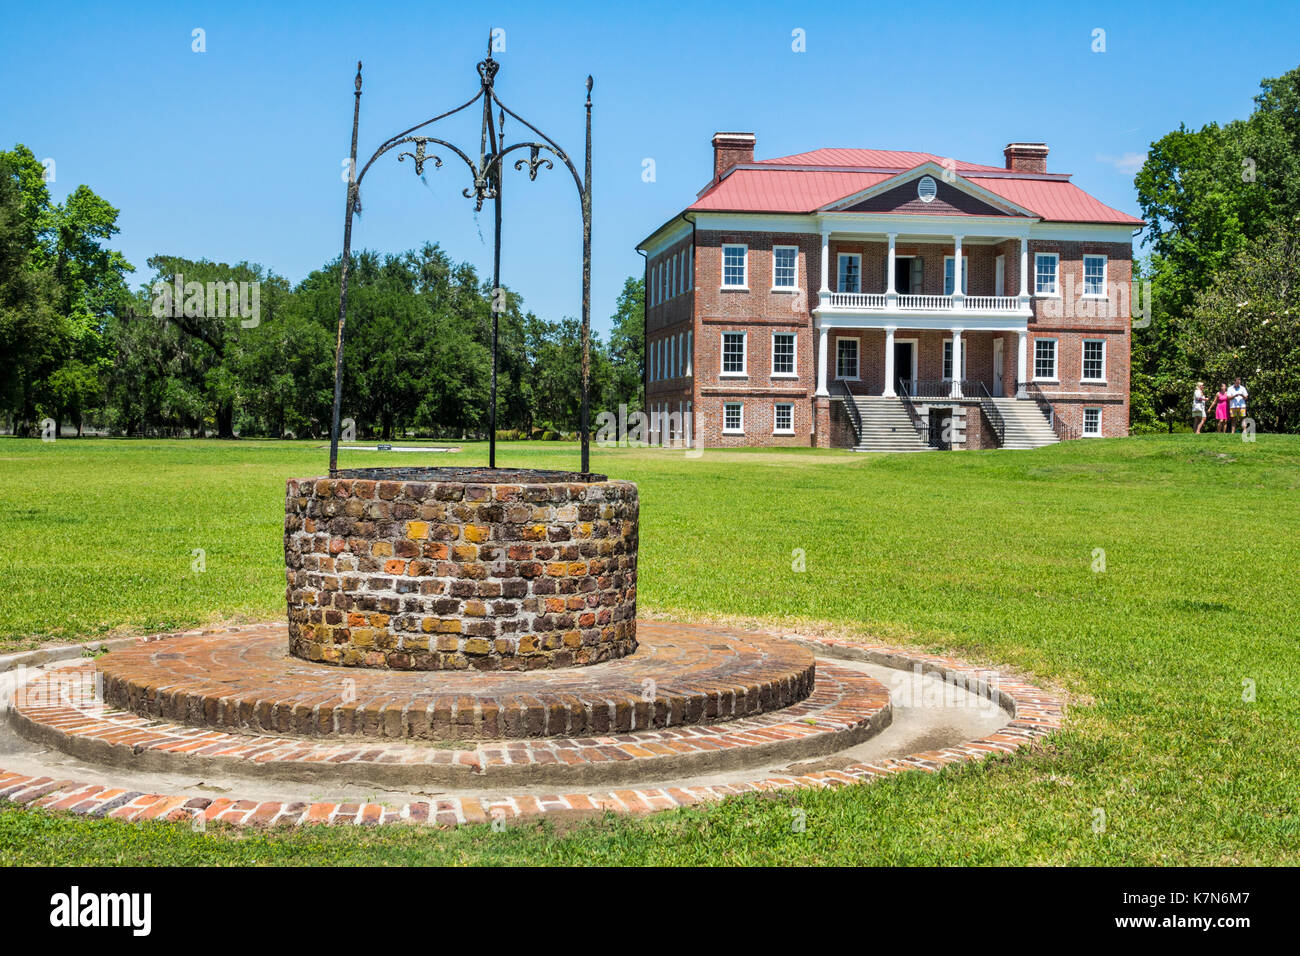 Charleston South Carolina, Drayton Hall, piantagione storica, preservazione, architettura palladiana, pozzo d'acqua in mattoni, SC170514234 Foto Stock